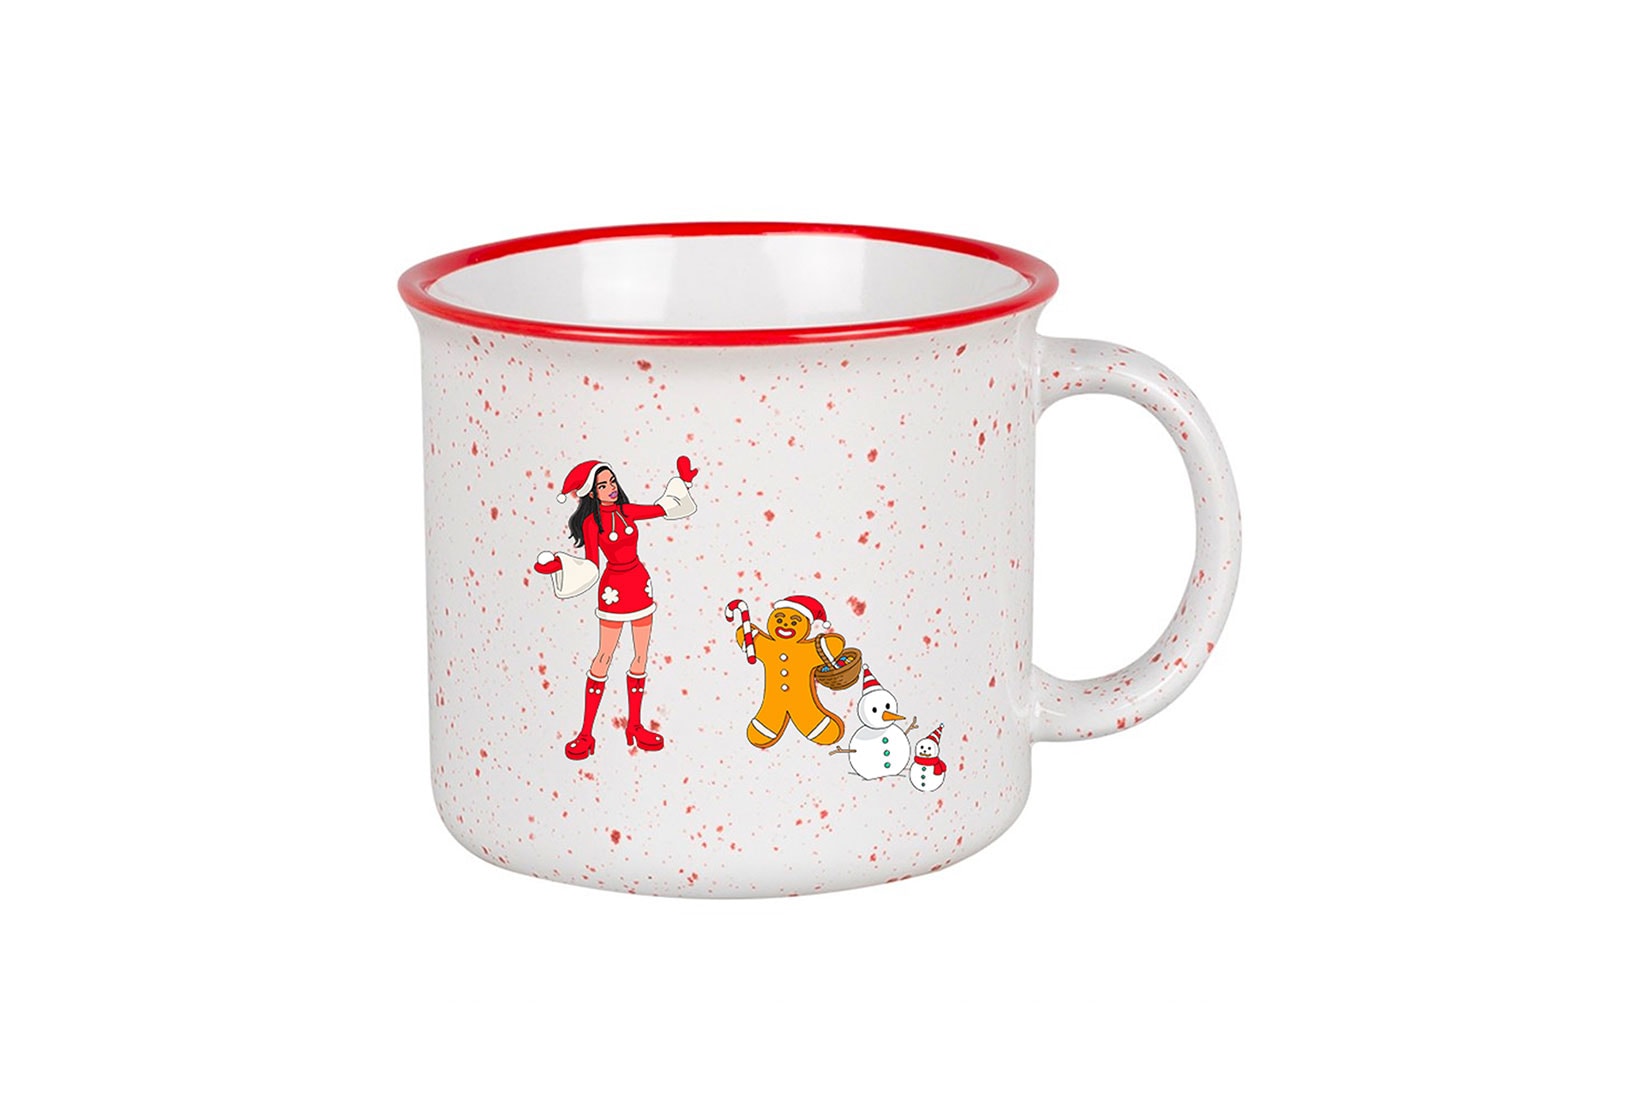 Dua Lipa Holiday 2021 Christmas Merch Collection Mug Cup